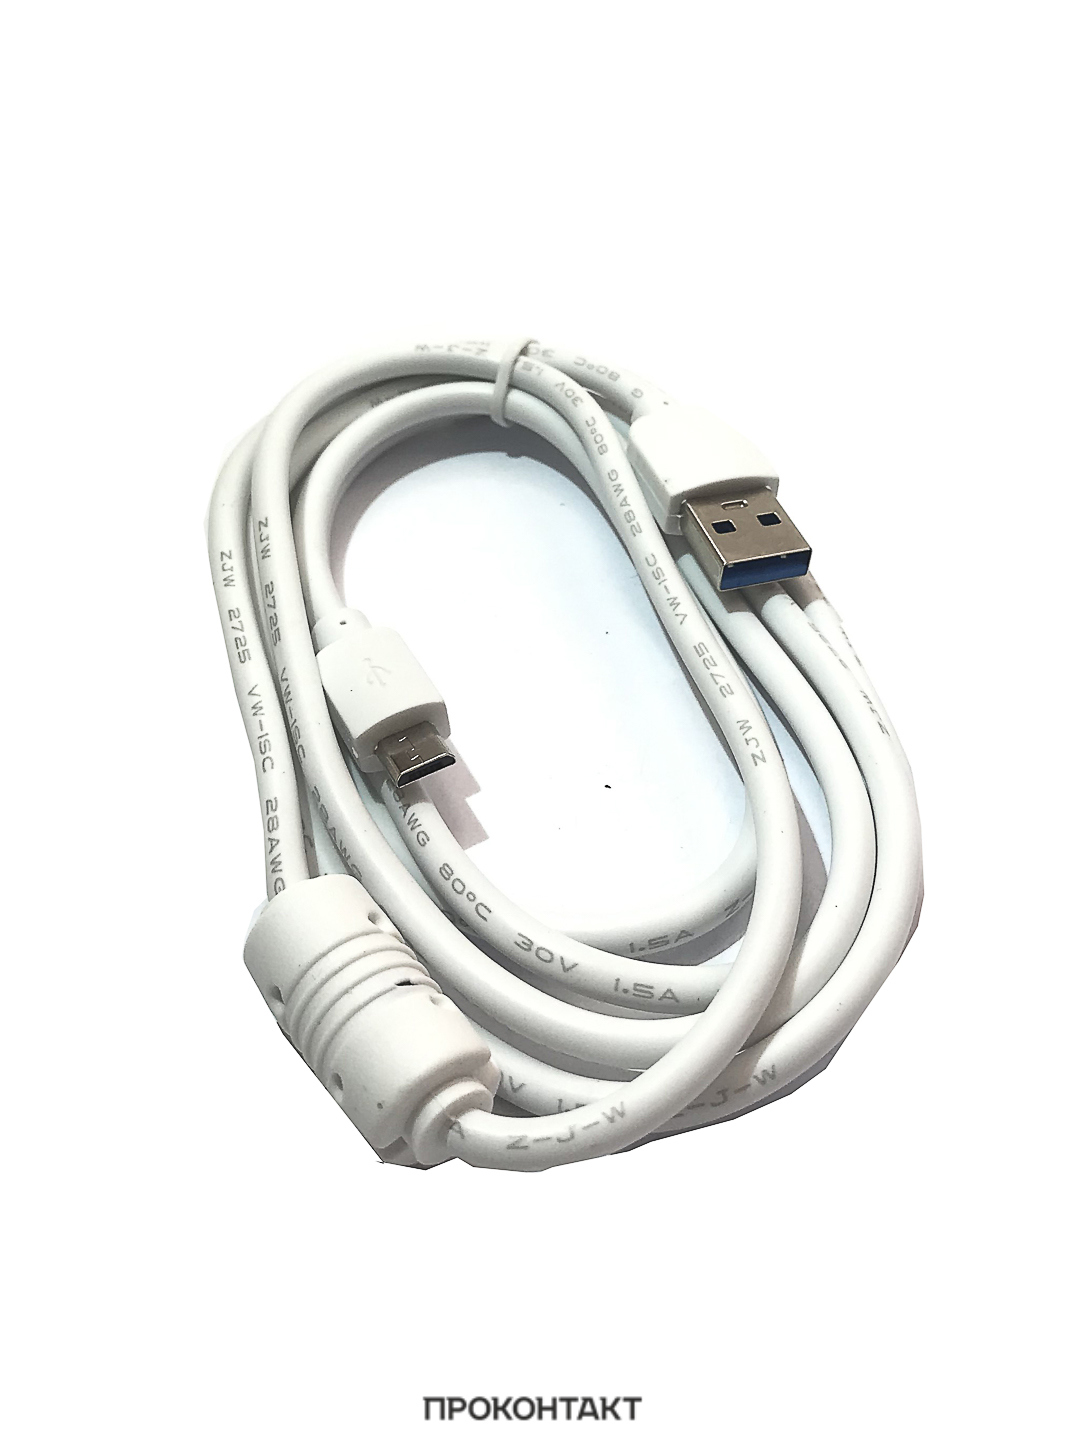 Купить Кабель USB - microUSB PS-92 1.4А (1,5 метра) с фильтром в Челябинске